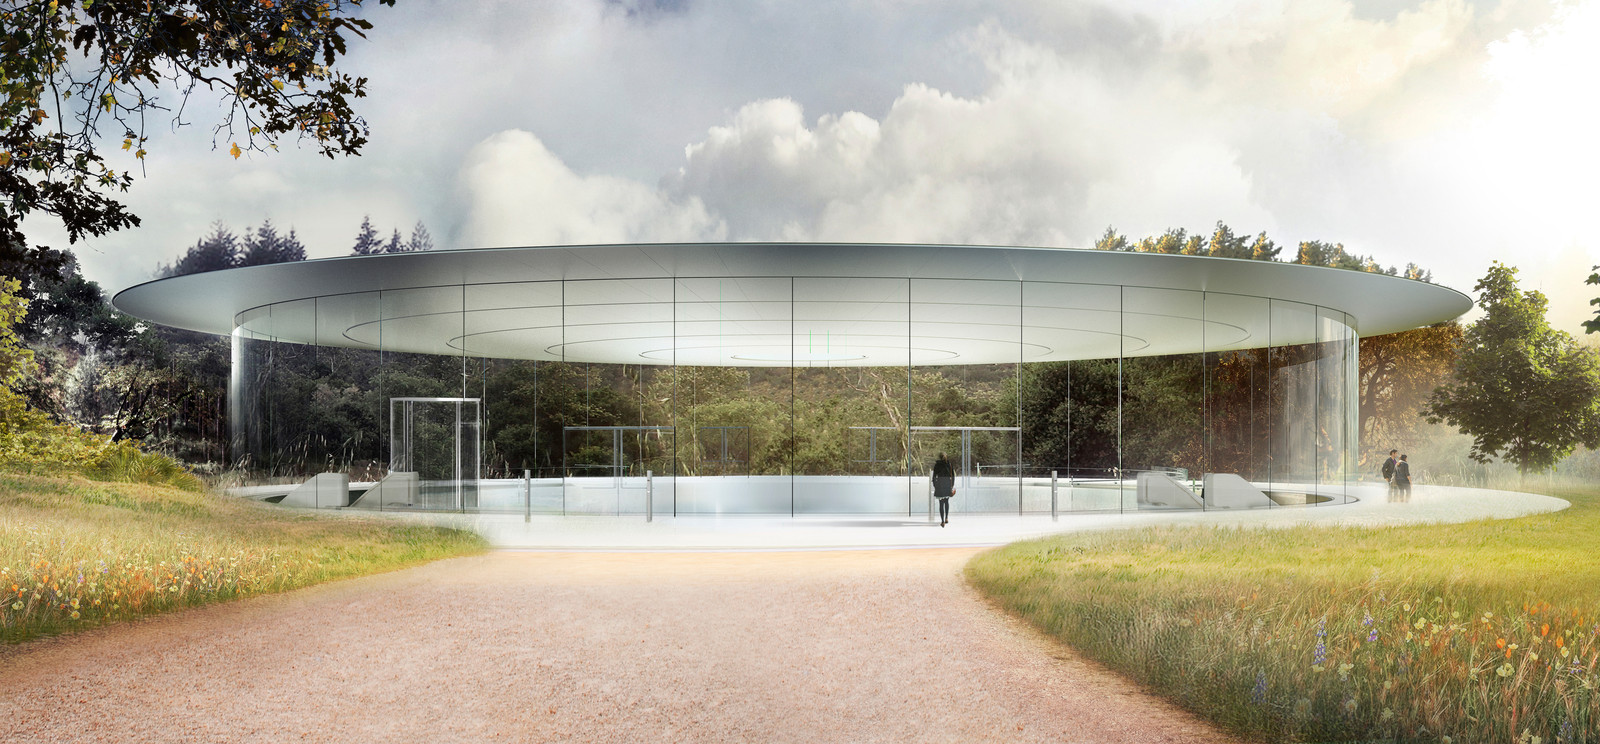 van nu af aan terug artillerie Nieuw kantoor Apple opent in april, theater vernoemd naar Steve Jobs | Foto  | AD.nl